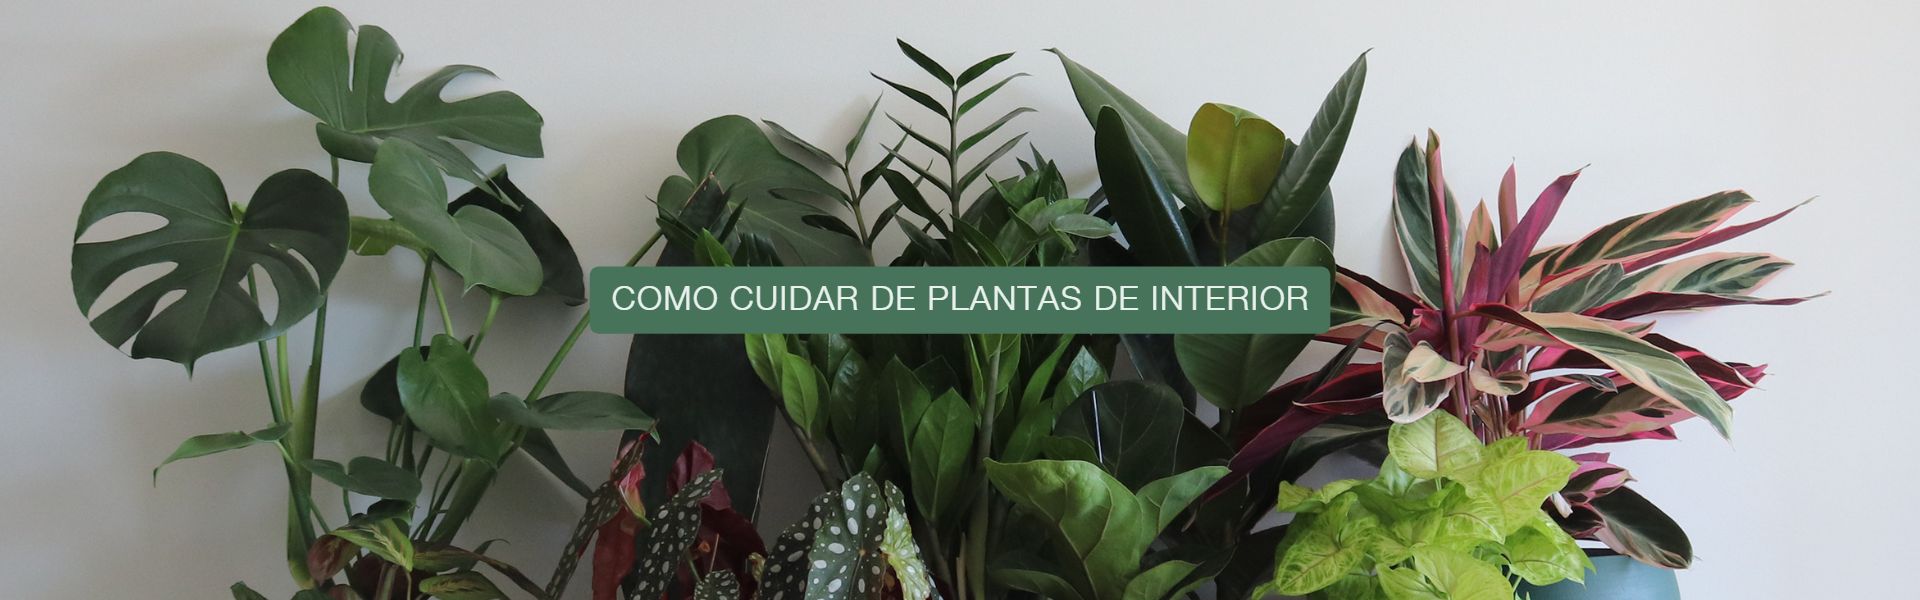 Cuidar plantas de interior